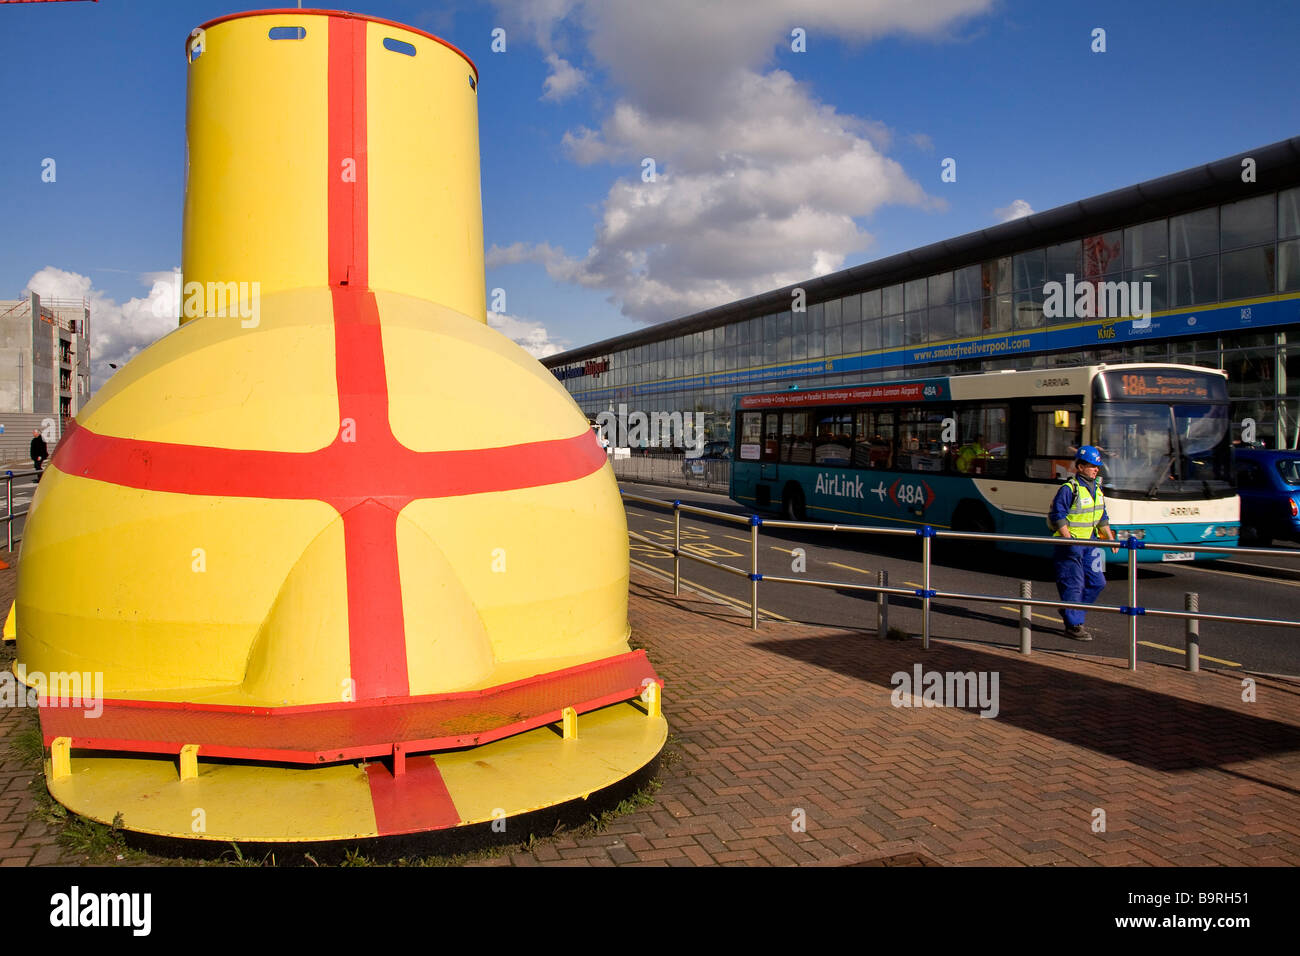 Royaume-uni, Liverpool, le sous-marin jaune grand modèle de représentation du sous-marin en vedette dans le film d'animation Banque D'Images